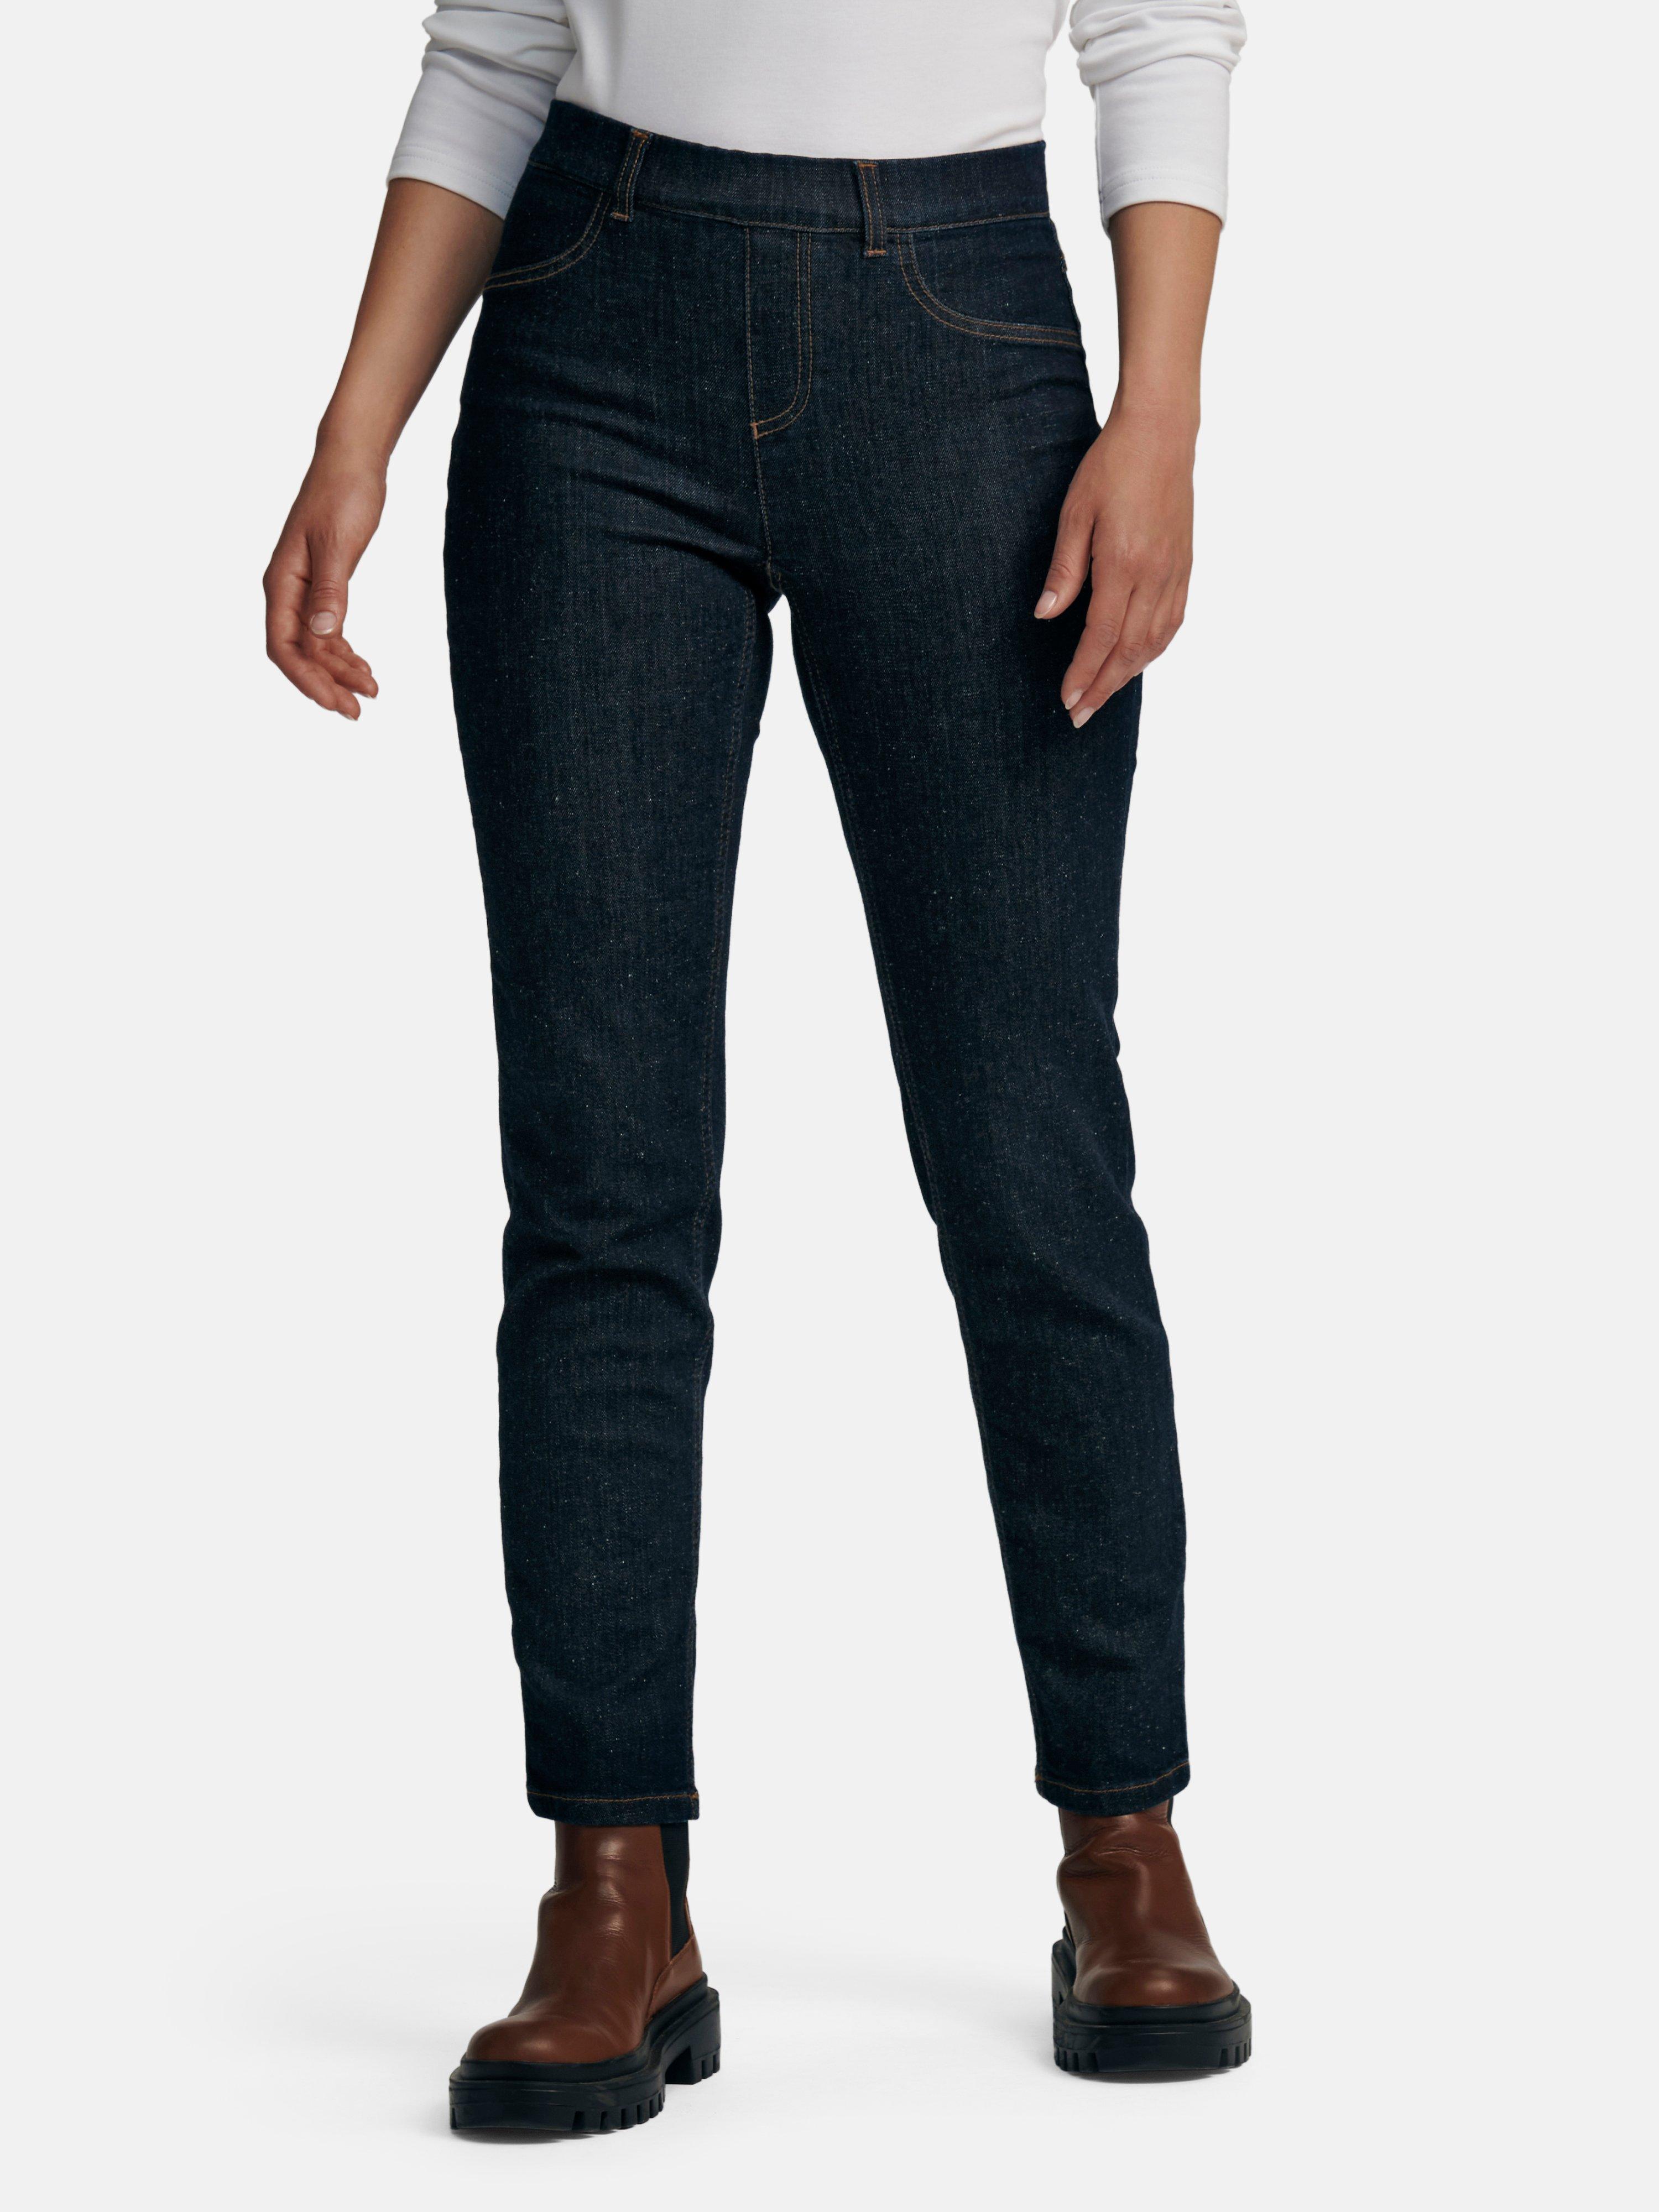 Jeans mit Gummizug jetzt Hahn Peter kaufen Online-Shop im